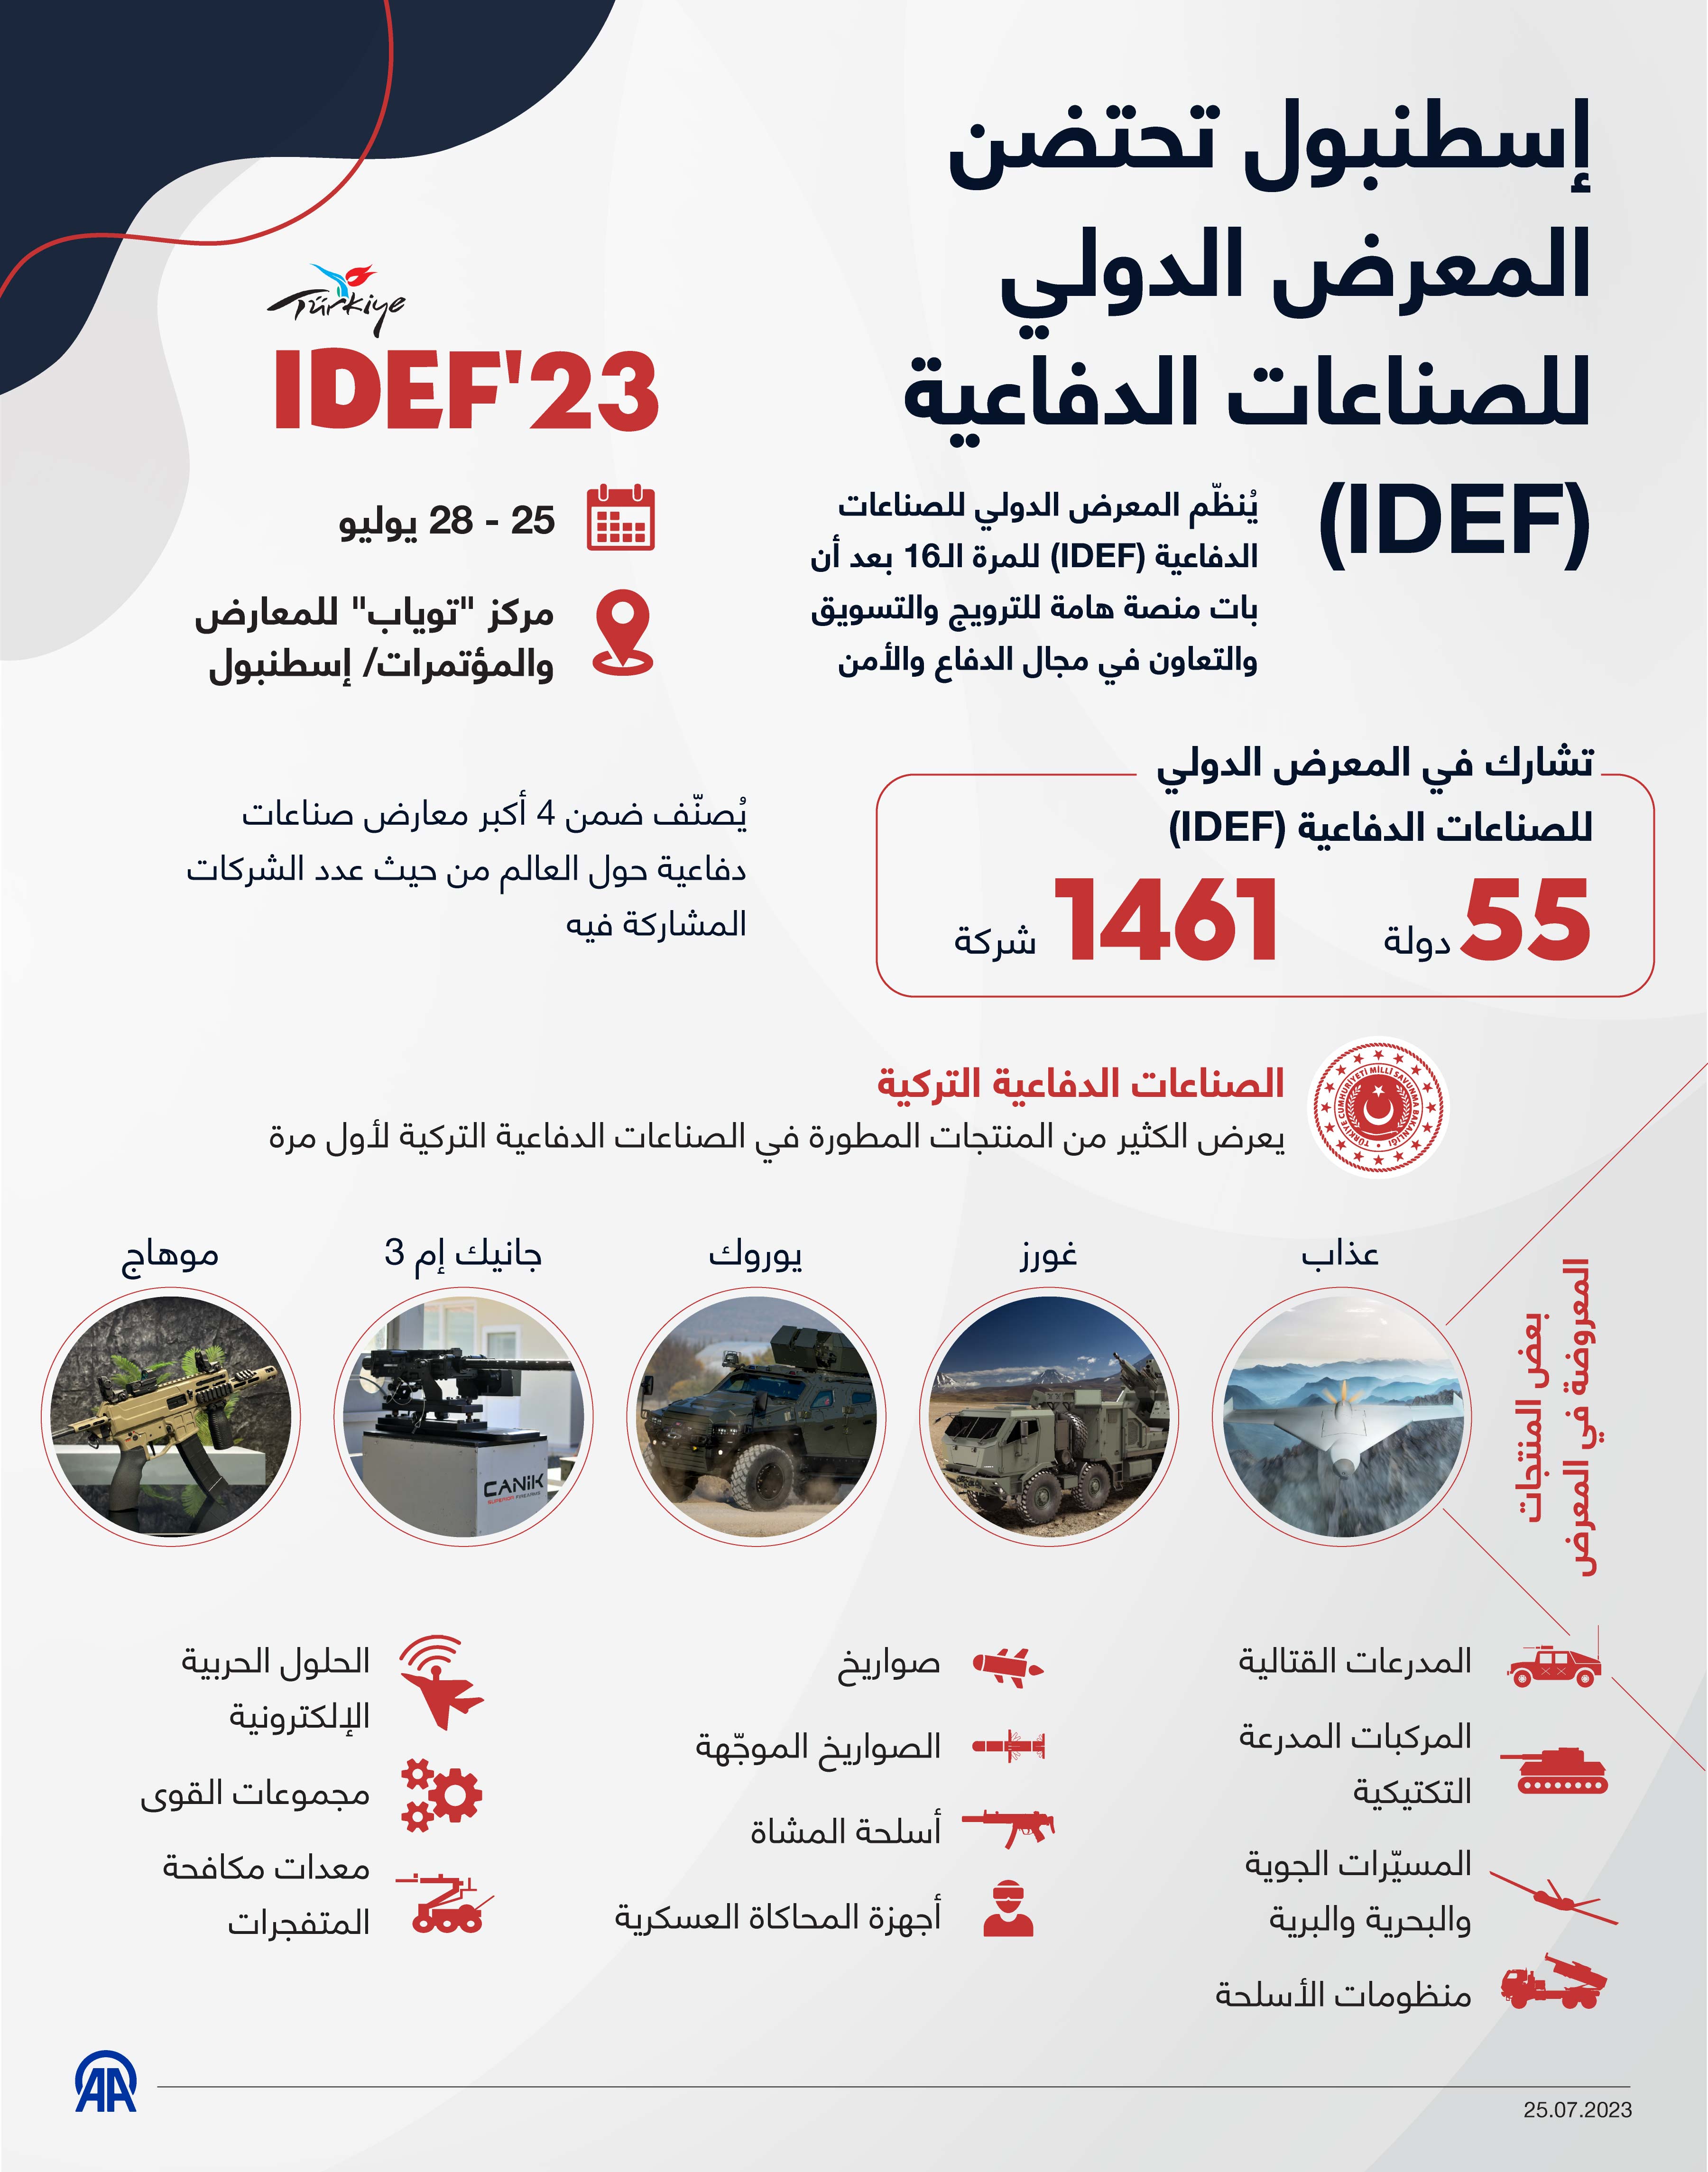 إسطنبول تحتضن المعرض الدولي للصناعات الدفاعية (IDEF)